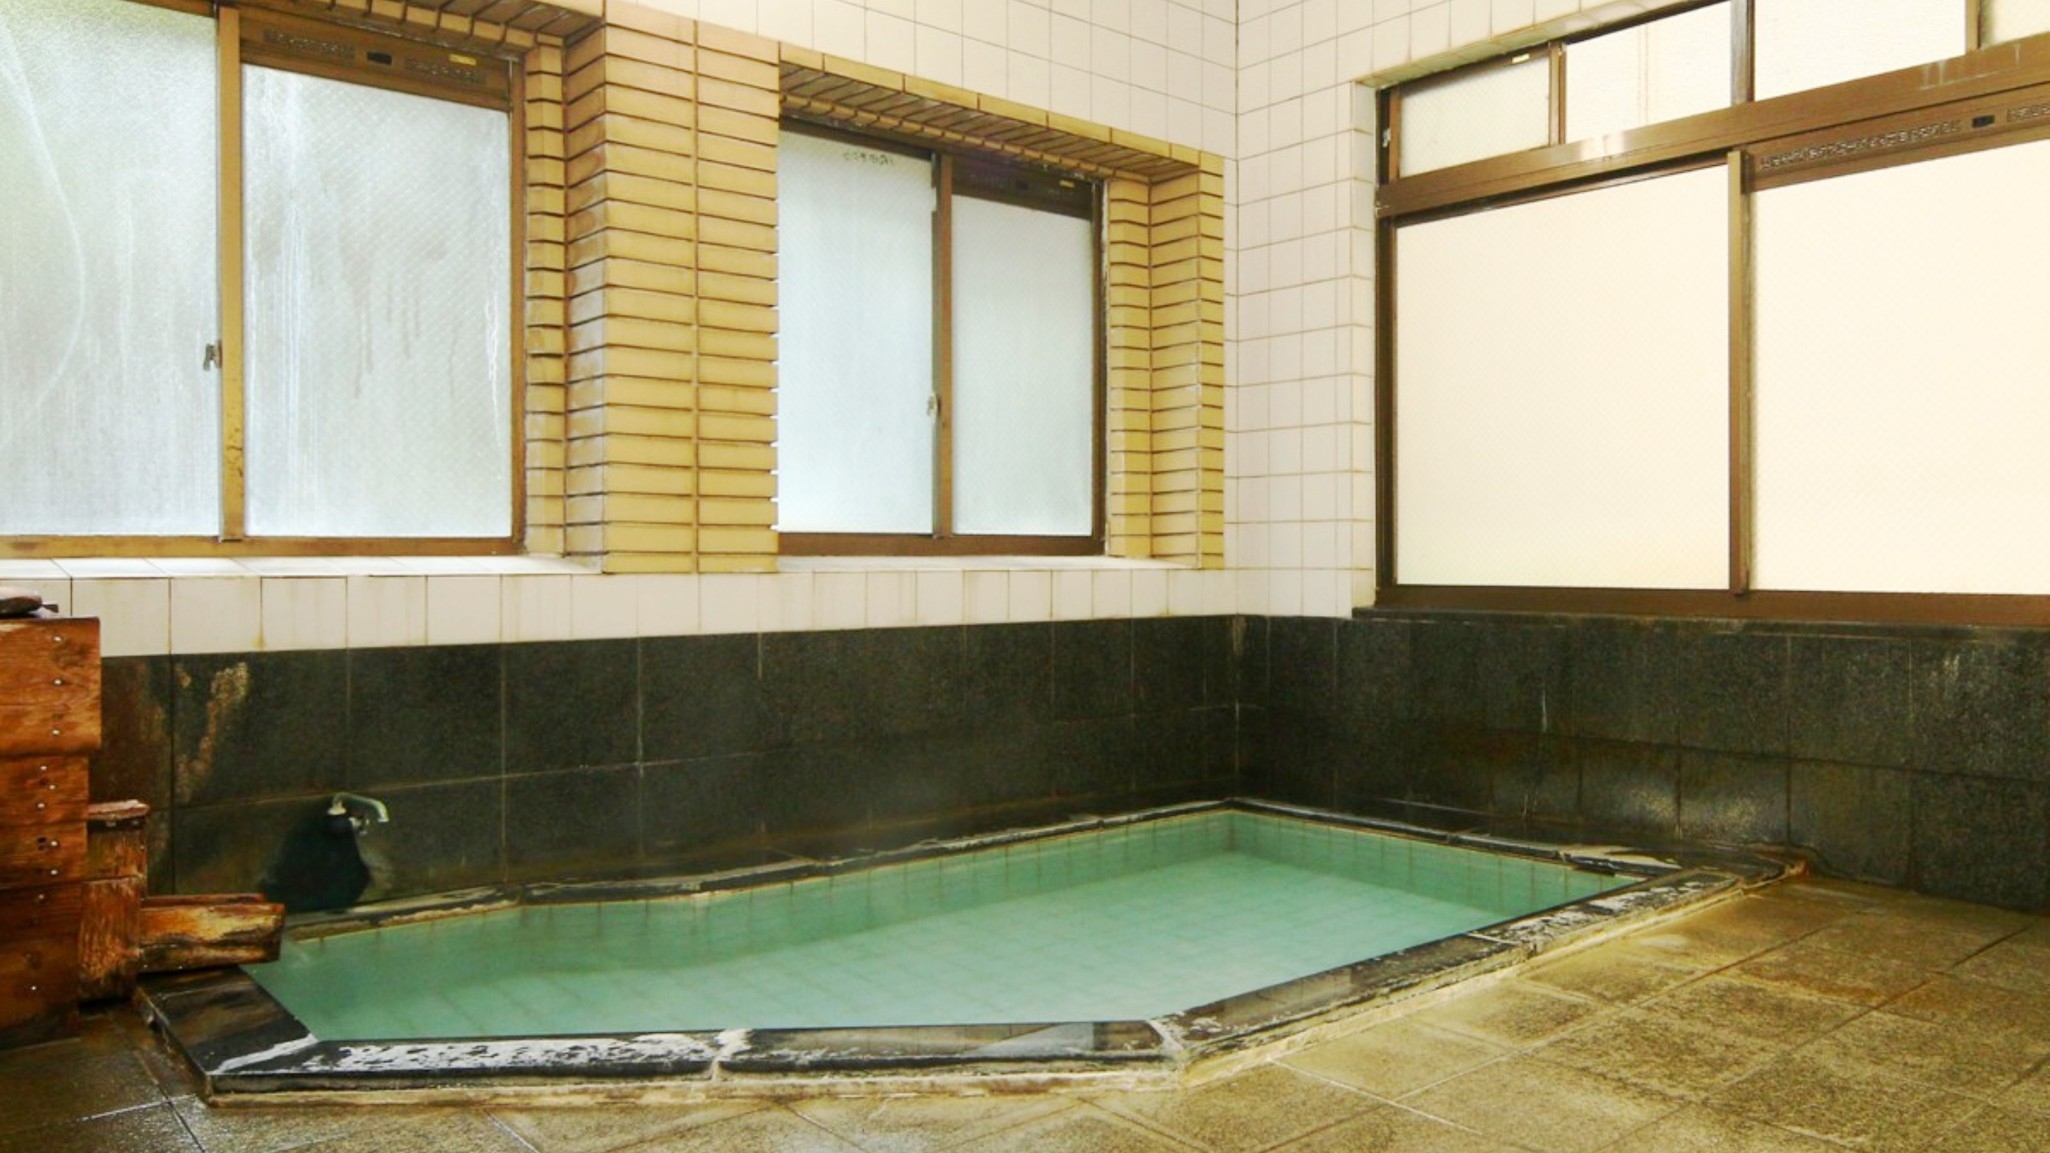 【1泊2食付】北信州野沢の旬の味覚とかけ流し温泉を楽しむ当館基本プラン